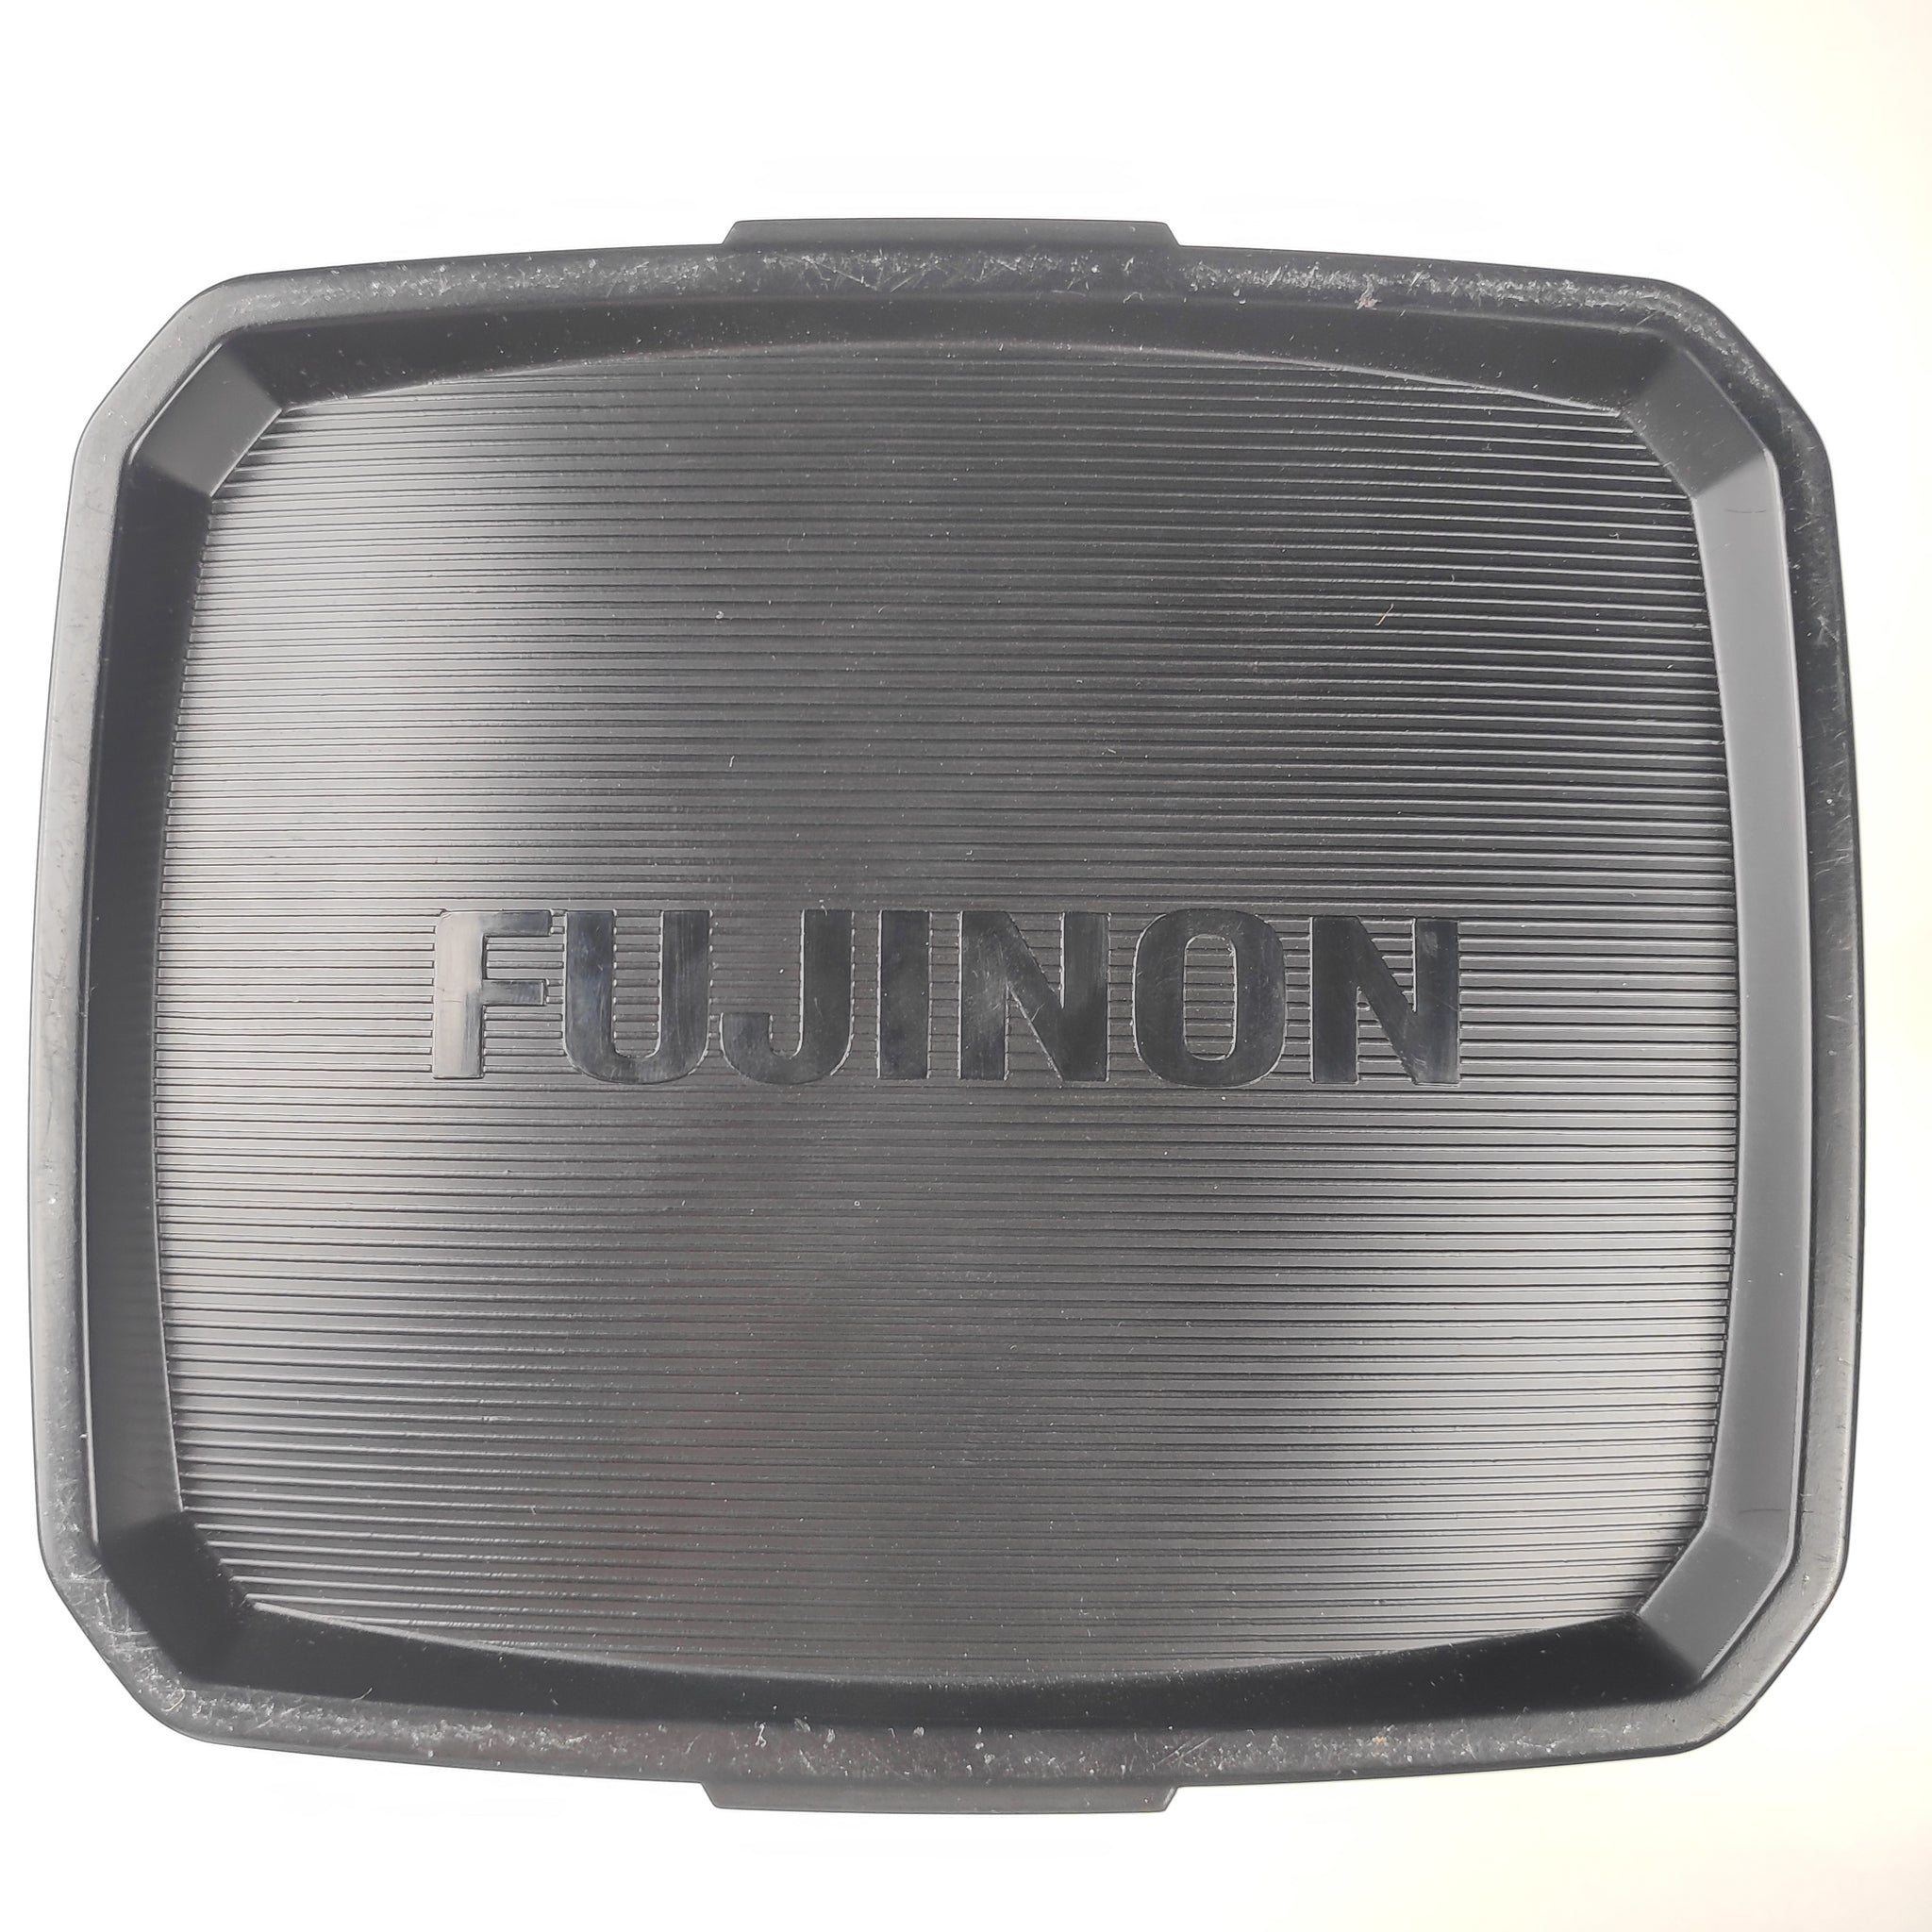 Fujinon HA14x4.5 BERD-S6B+Standart Servo Kit SS-13A+Protection Filter EPF-127 (31252)